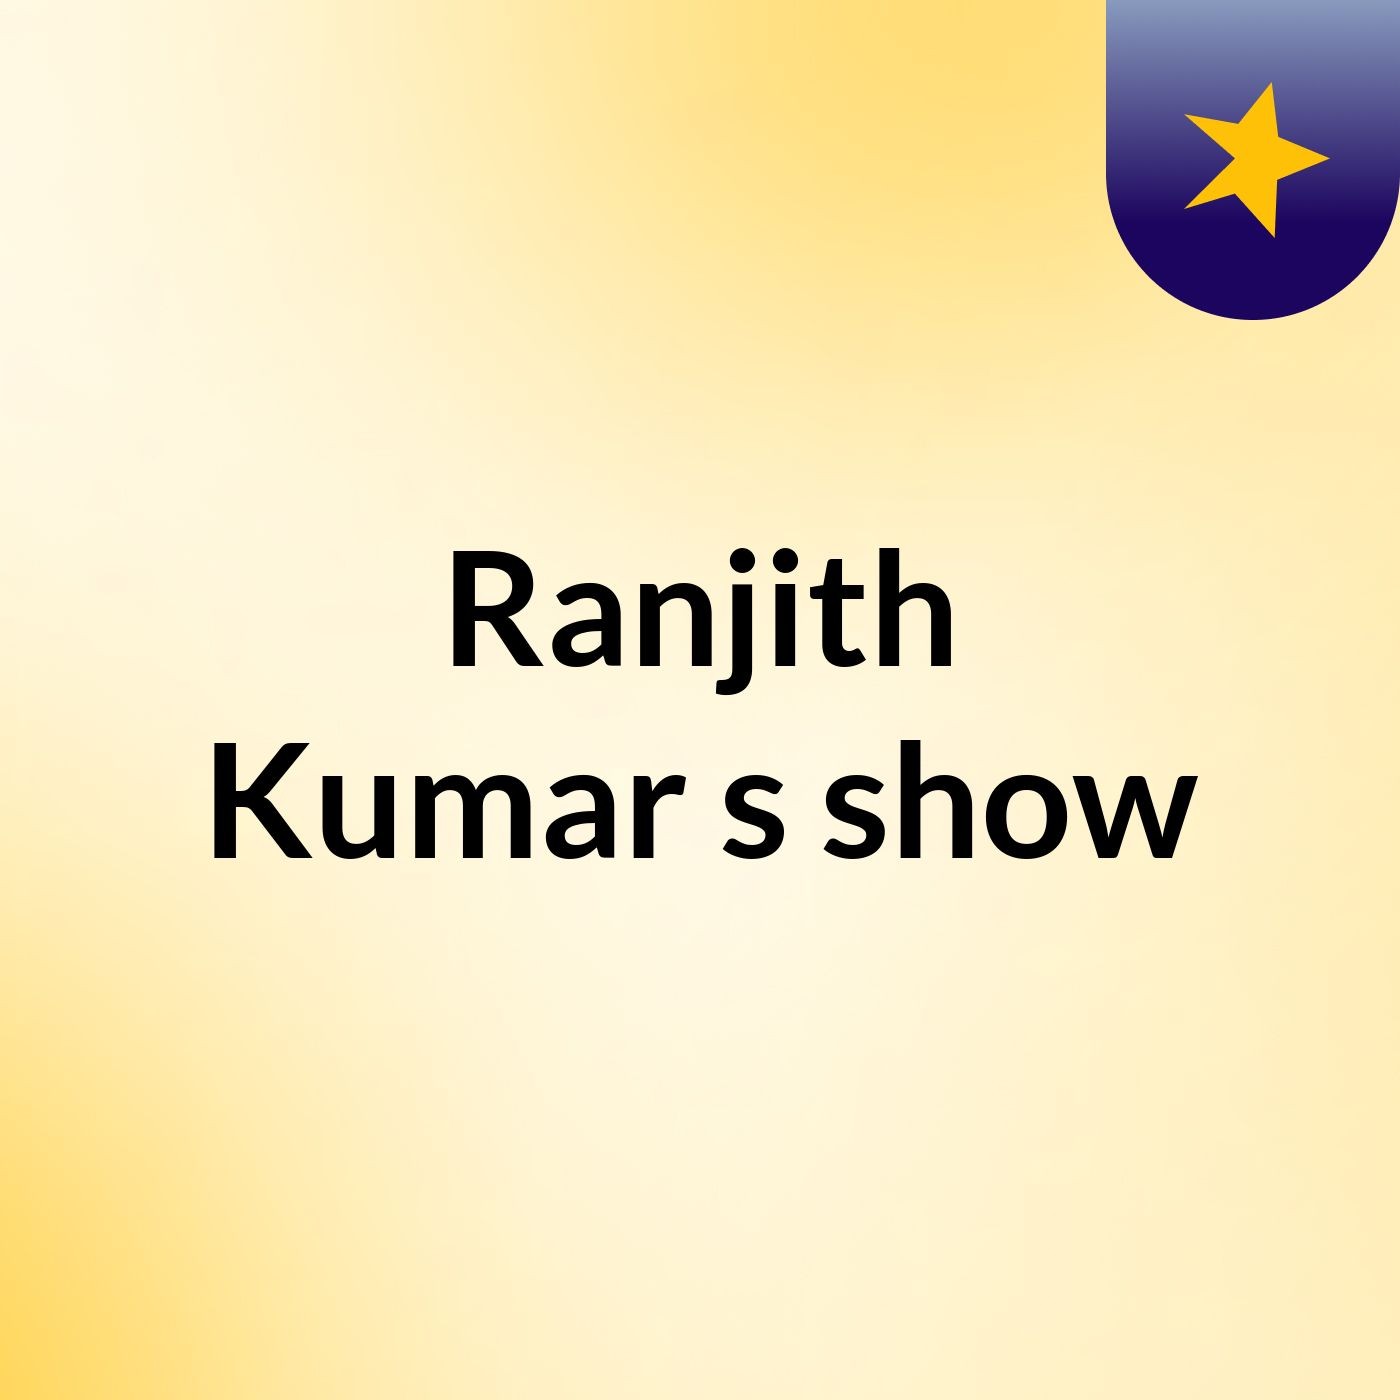 Ranjith Kumar's show